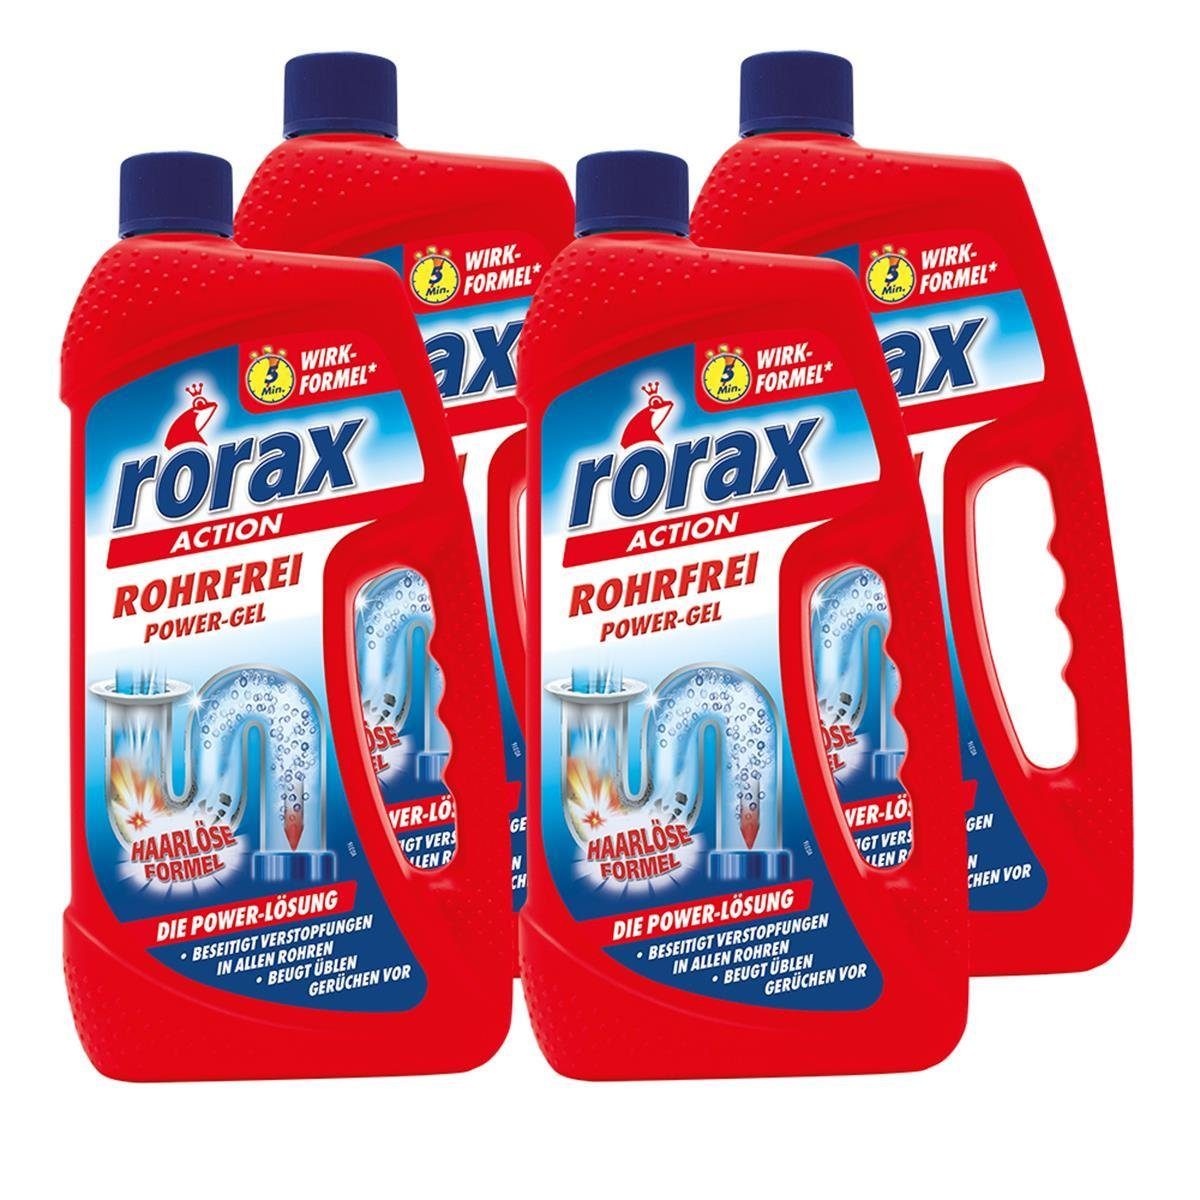 rorax 4x rorax Rohrfrei Power-Gel 1 Liter - Löst selbst Haare auf Rohrreiniger